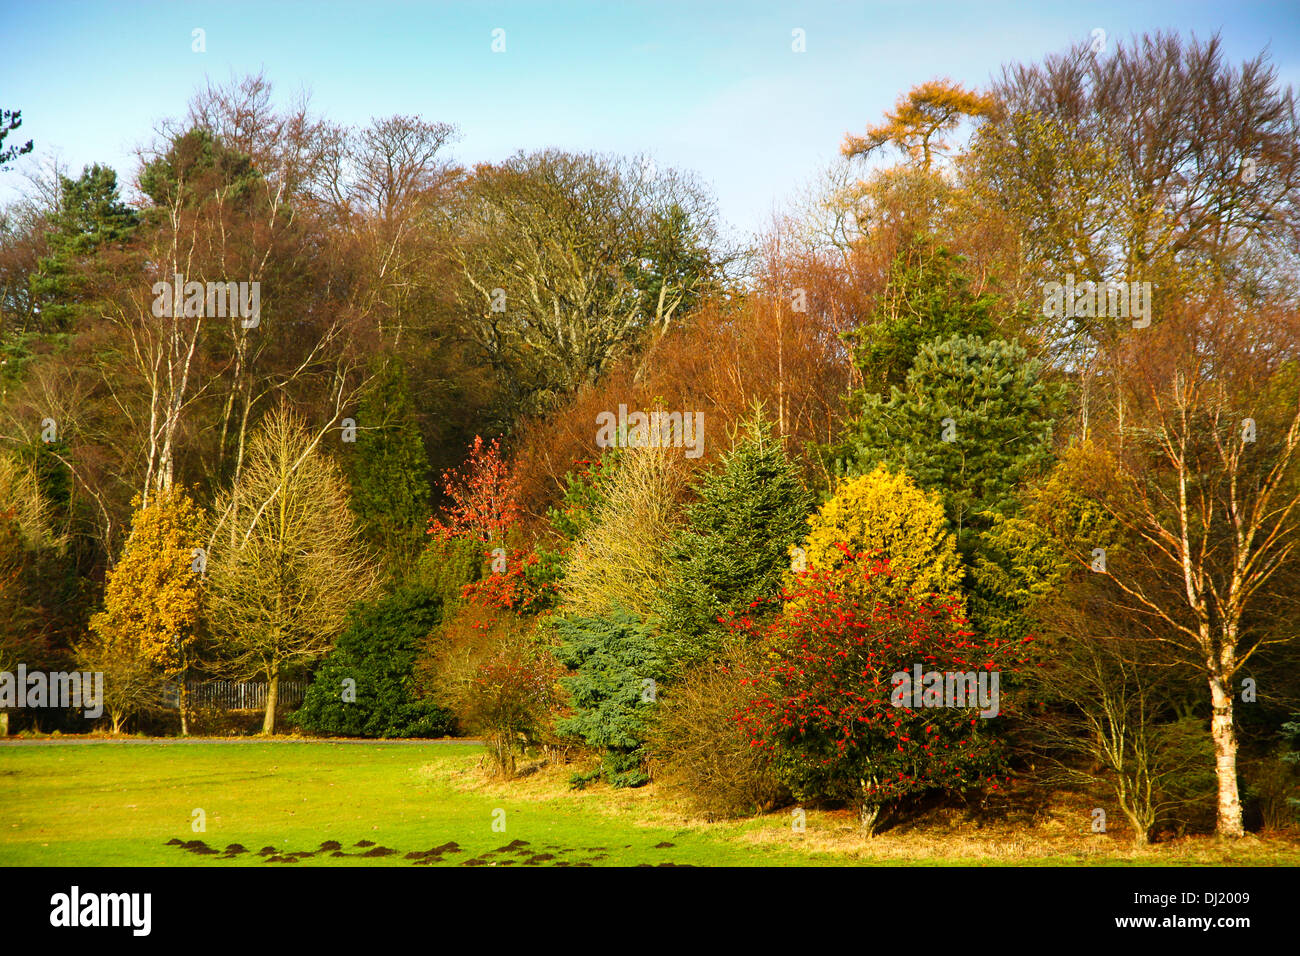 Schottlands, Glasgow, Vereinigtes Königreich. 19. November 2013. Herbstfarben im Colzium Park Schottlands. Bildnachweis: ALAN OLIVER/Alamy Live-Nachrichten Stockfoto